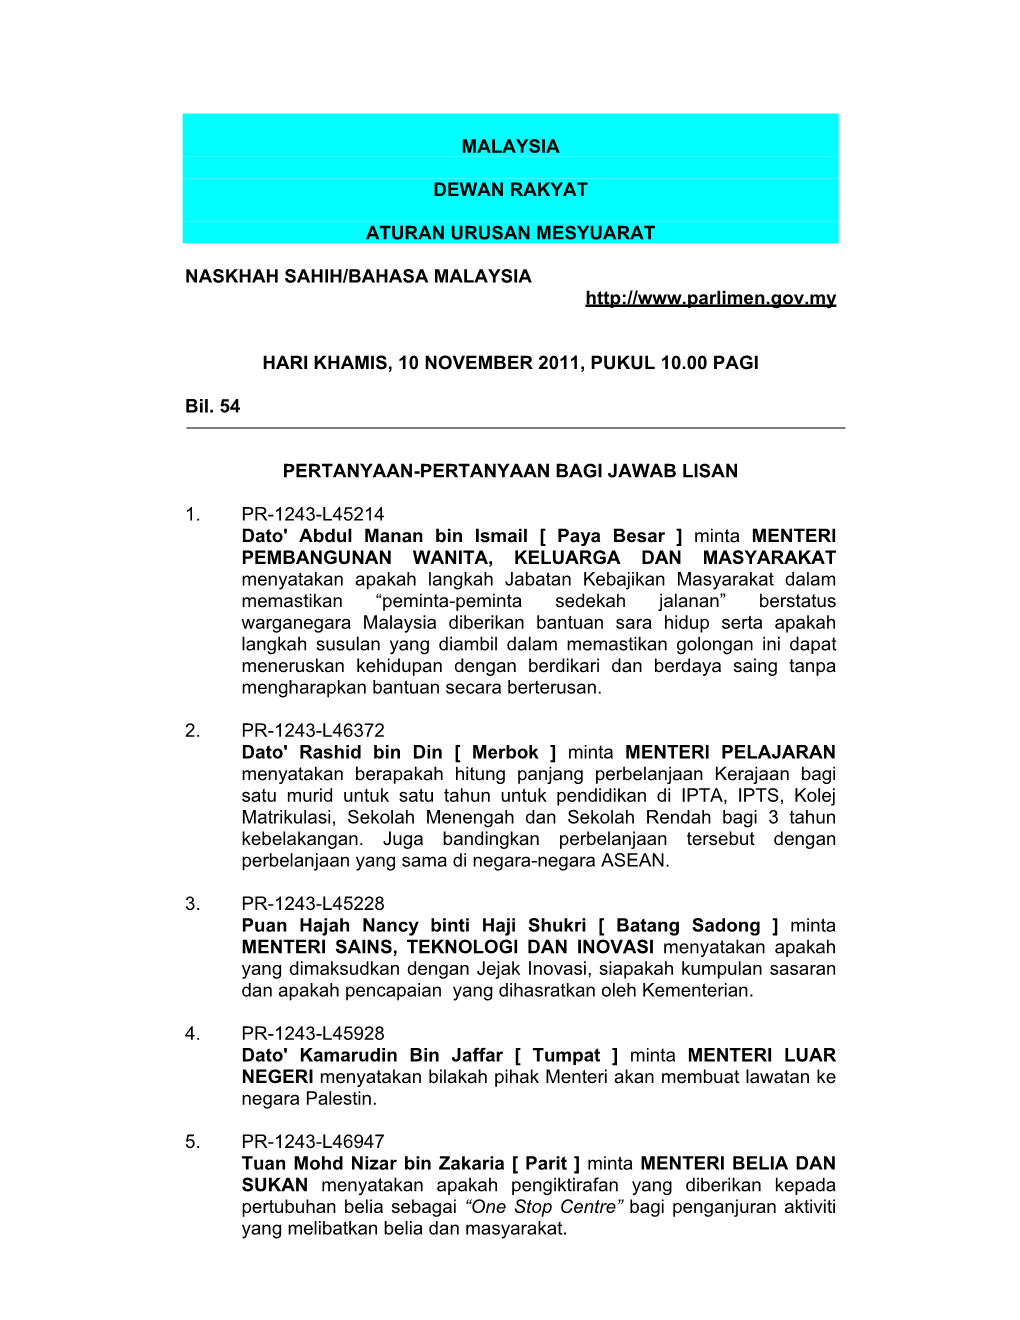 Malaysia Dewan Rakyat Aturan Urusan Mesyuarat Naskhah Sahih/Bahasa Malaysia Hari Khamis, 10 November